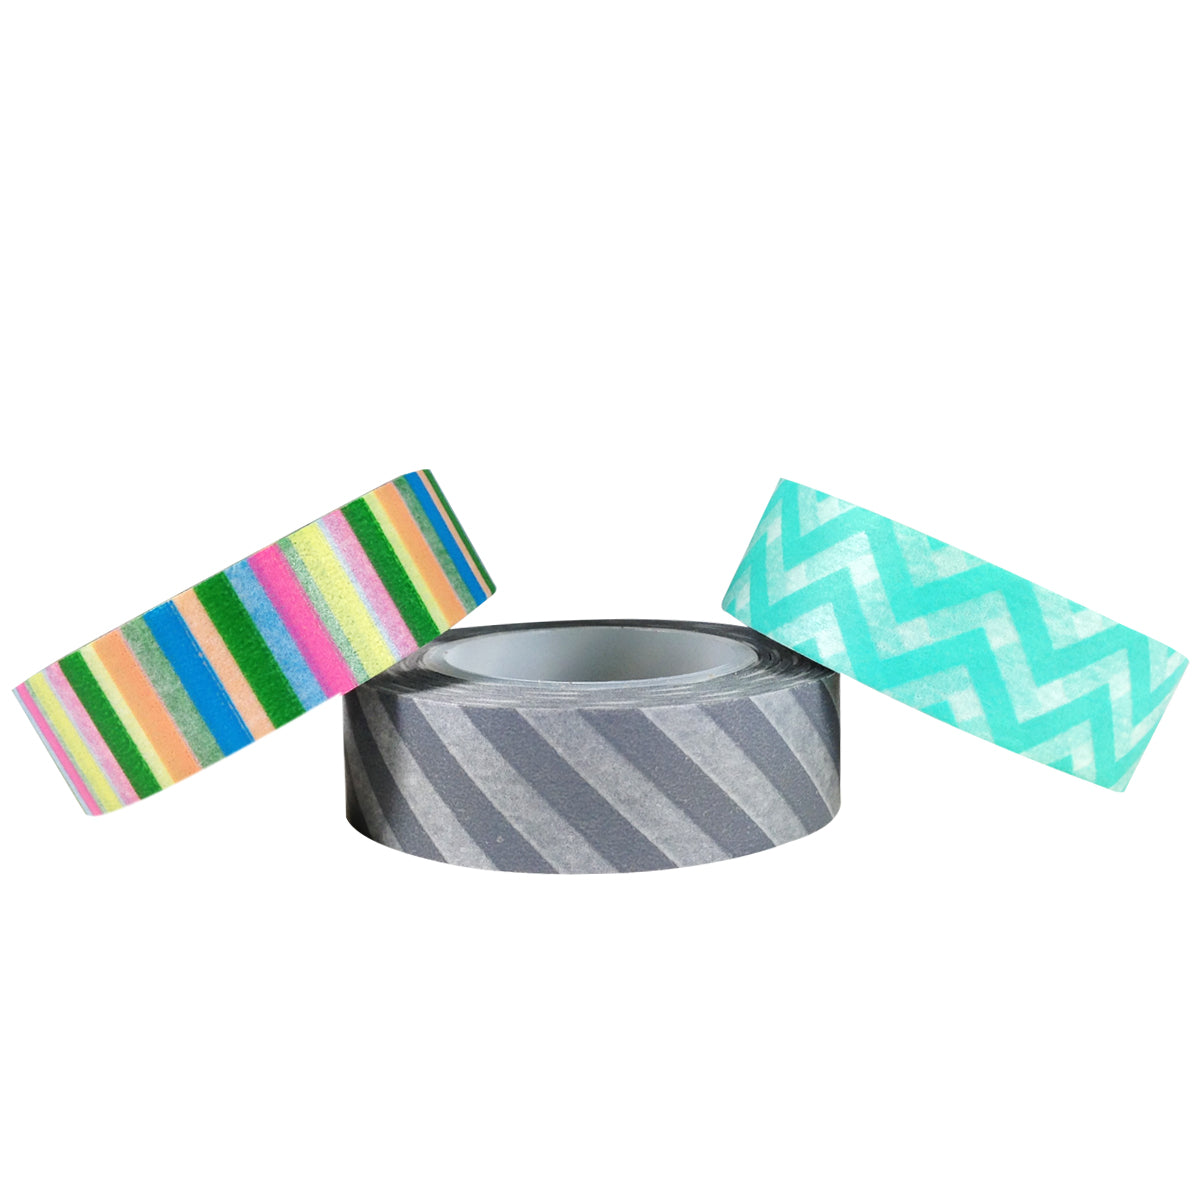 Wrapables Cool Stripes Japanese Washi Masking Tape (Set of 3)